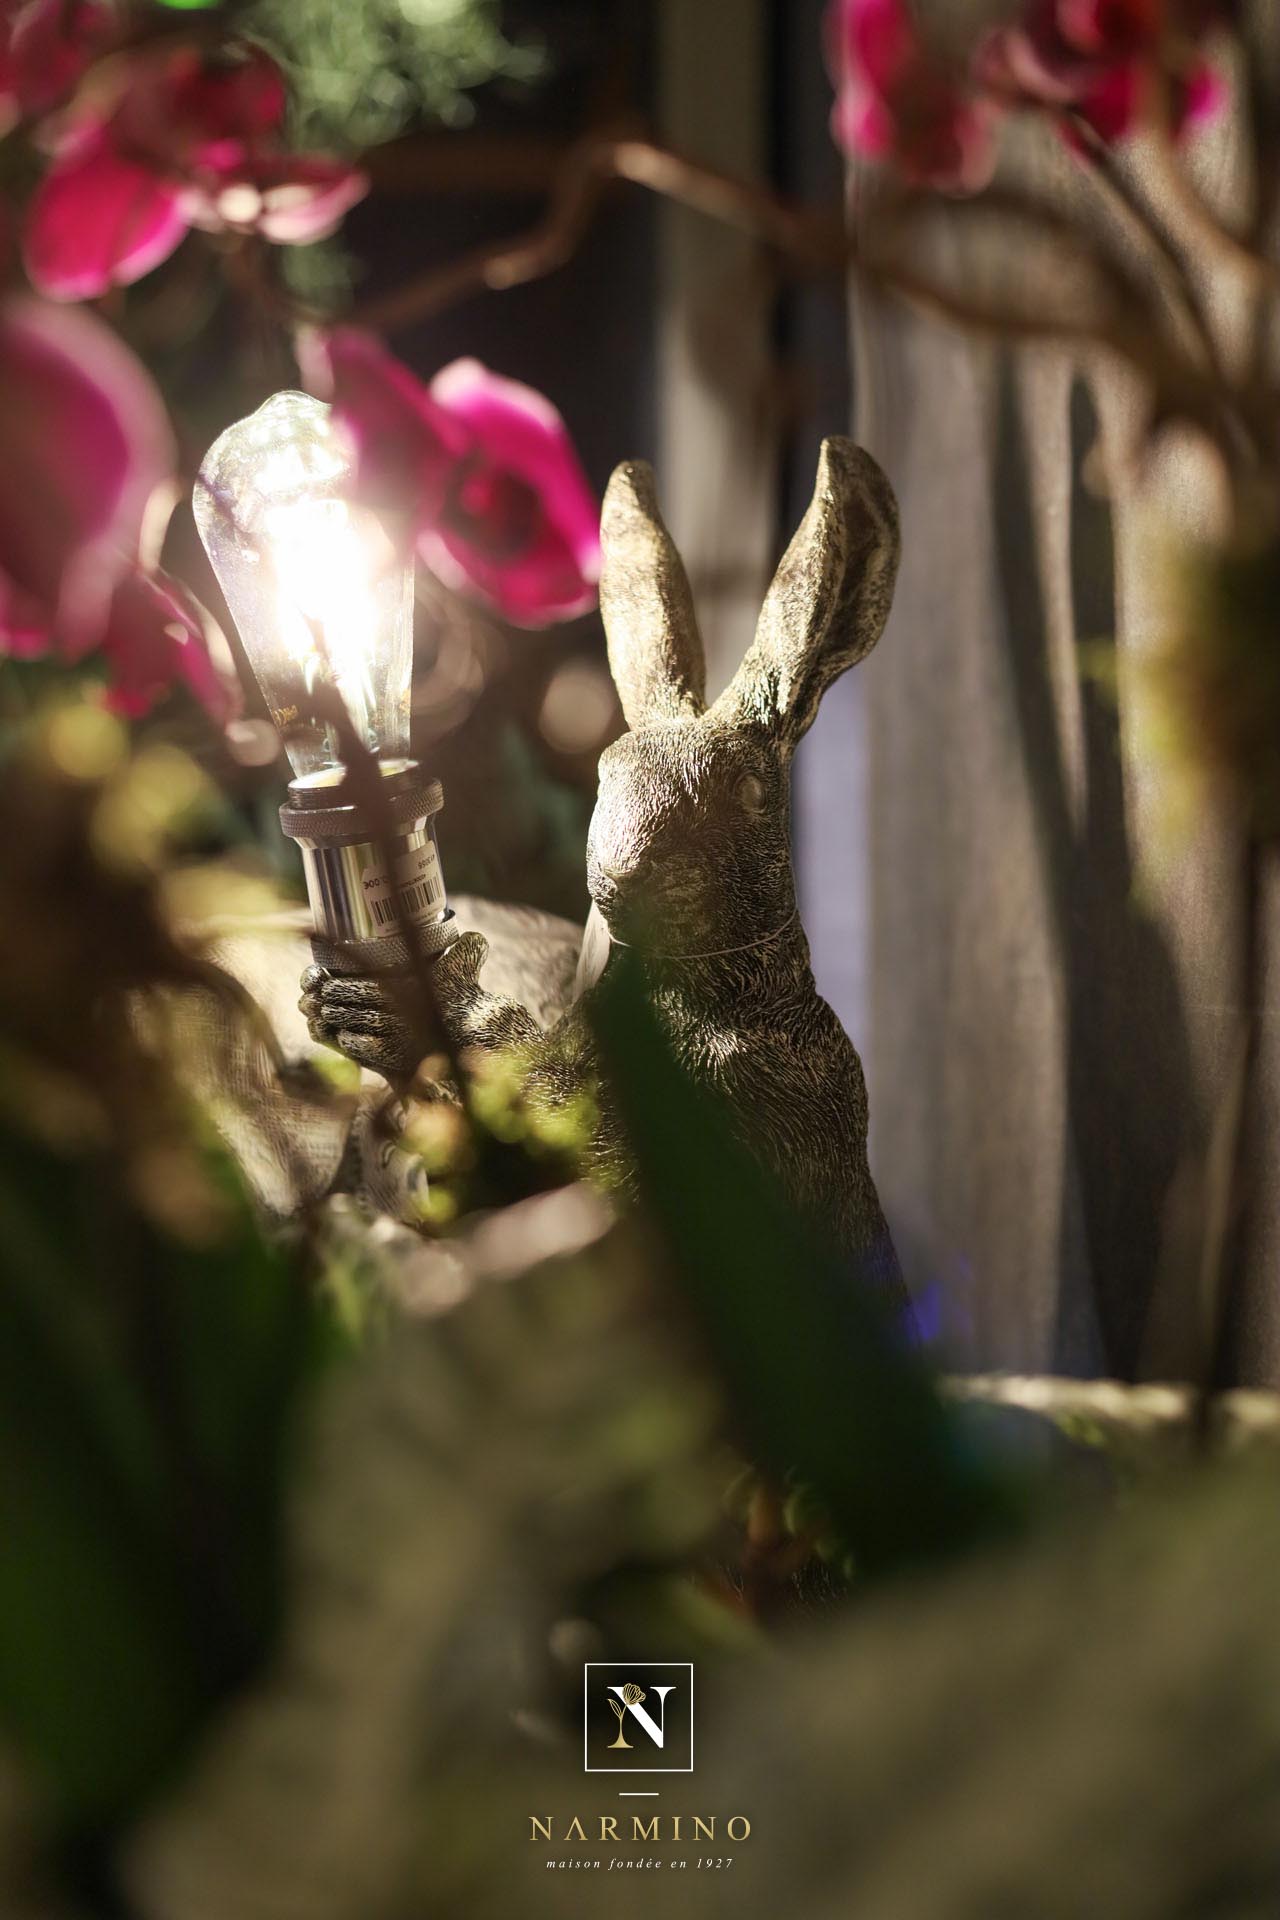 Un discret lapin caché derrière de belles orchidées